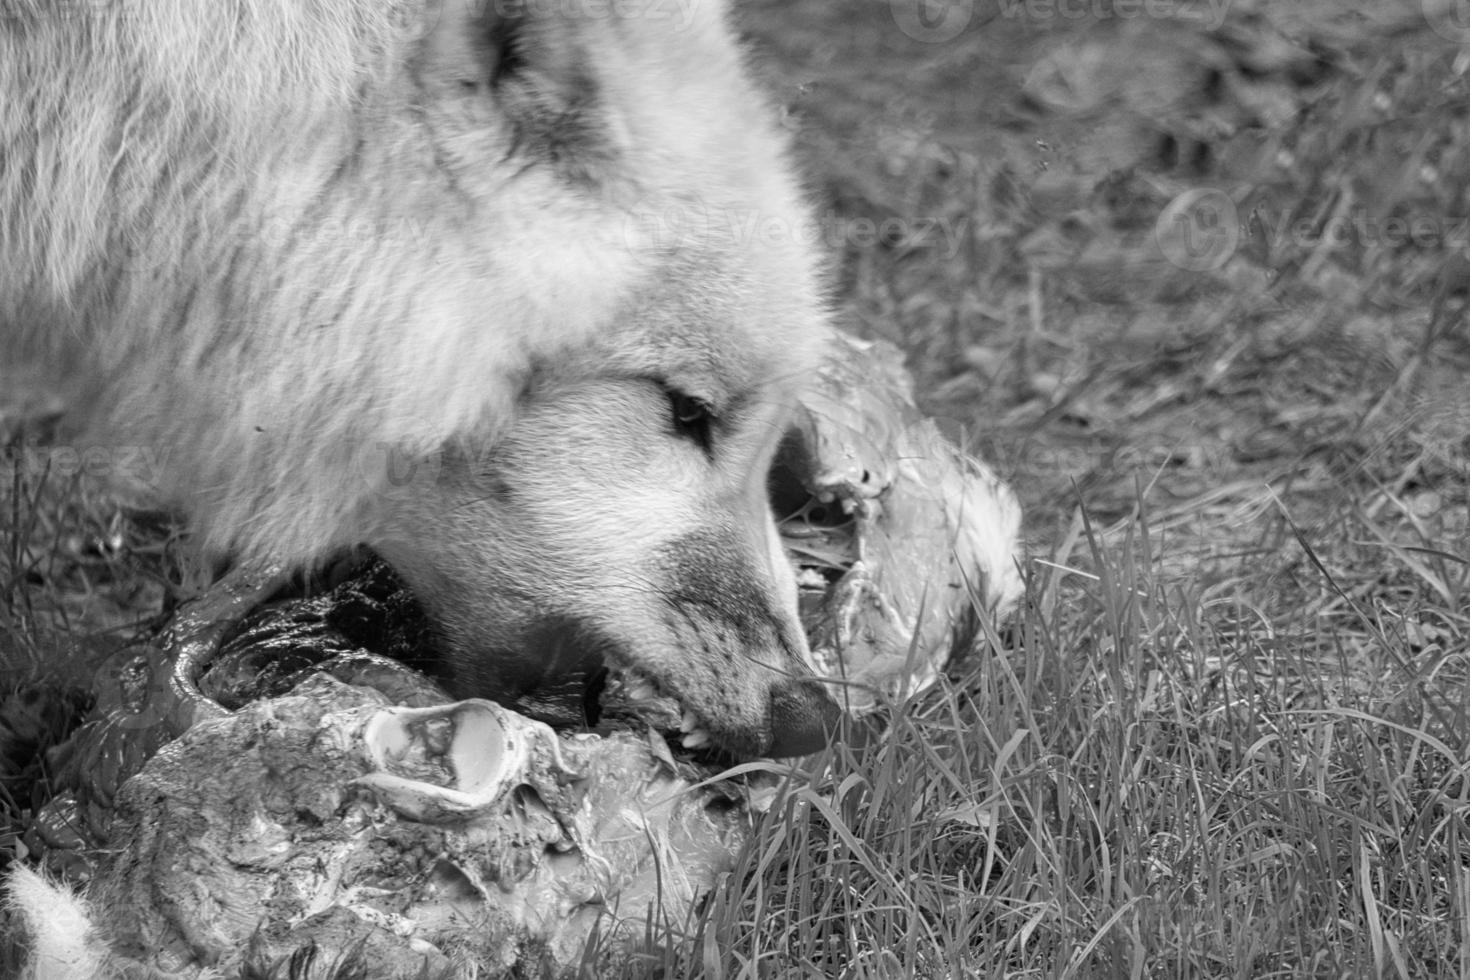 joven lobo blanco, en blanco y negro tomado en el wolfspark werner freund mientras se alimenta. foto